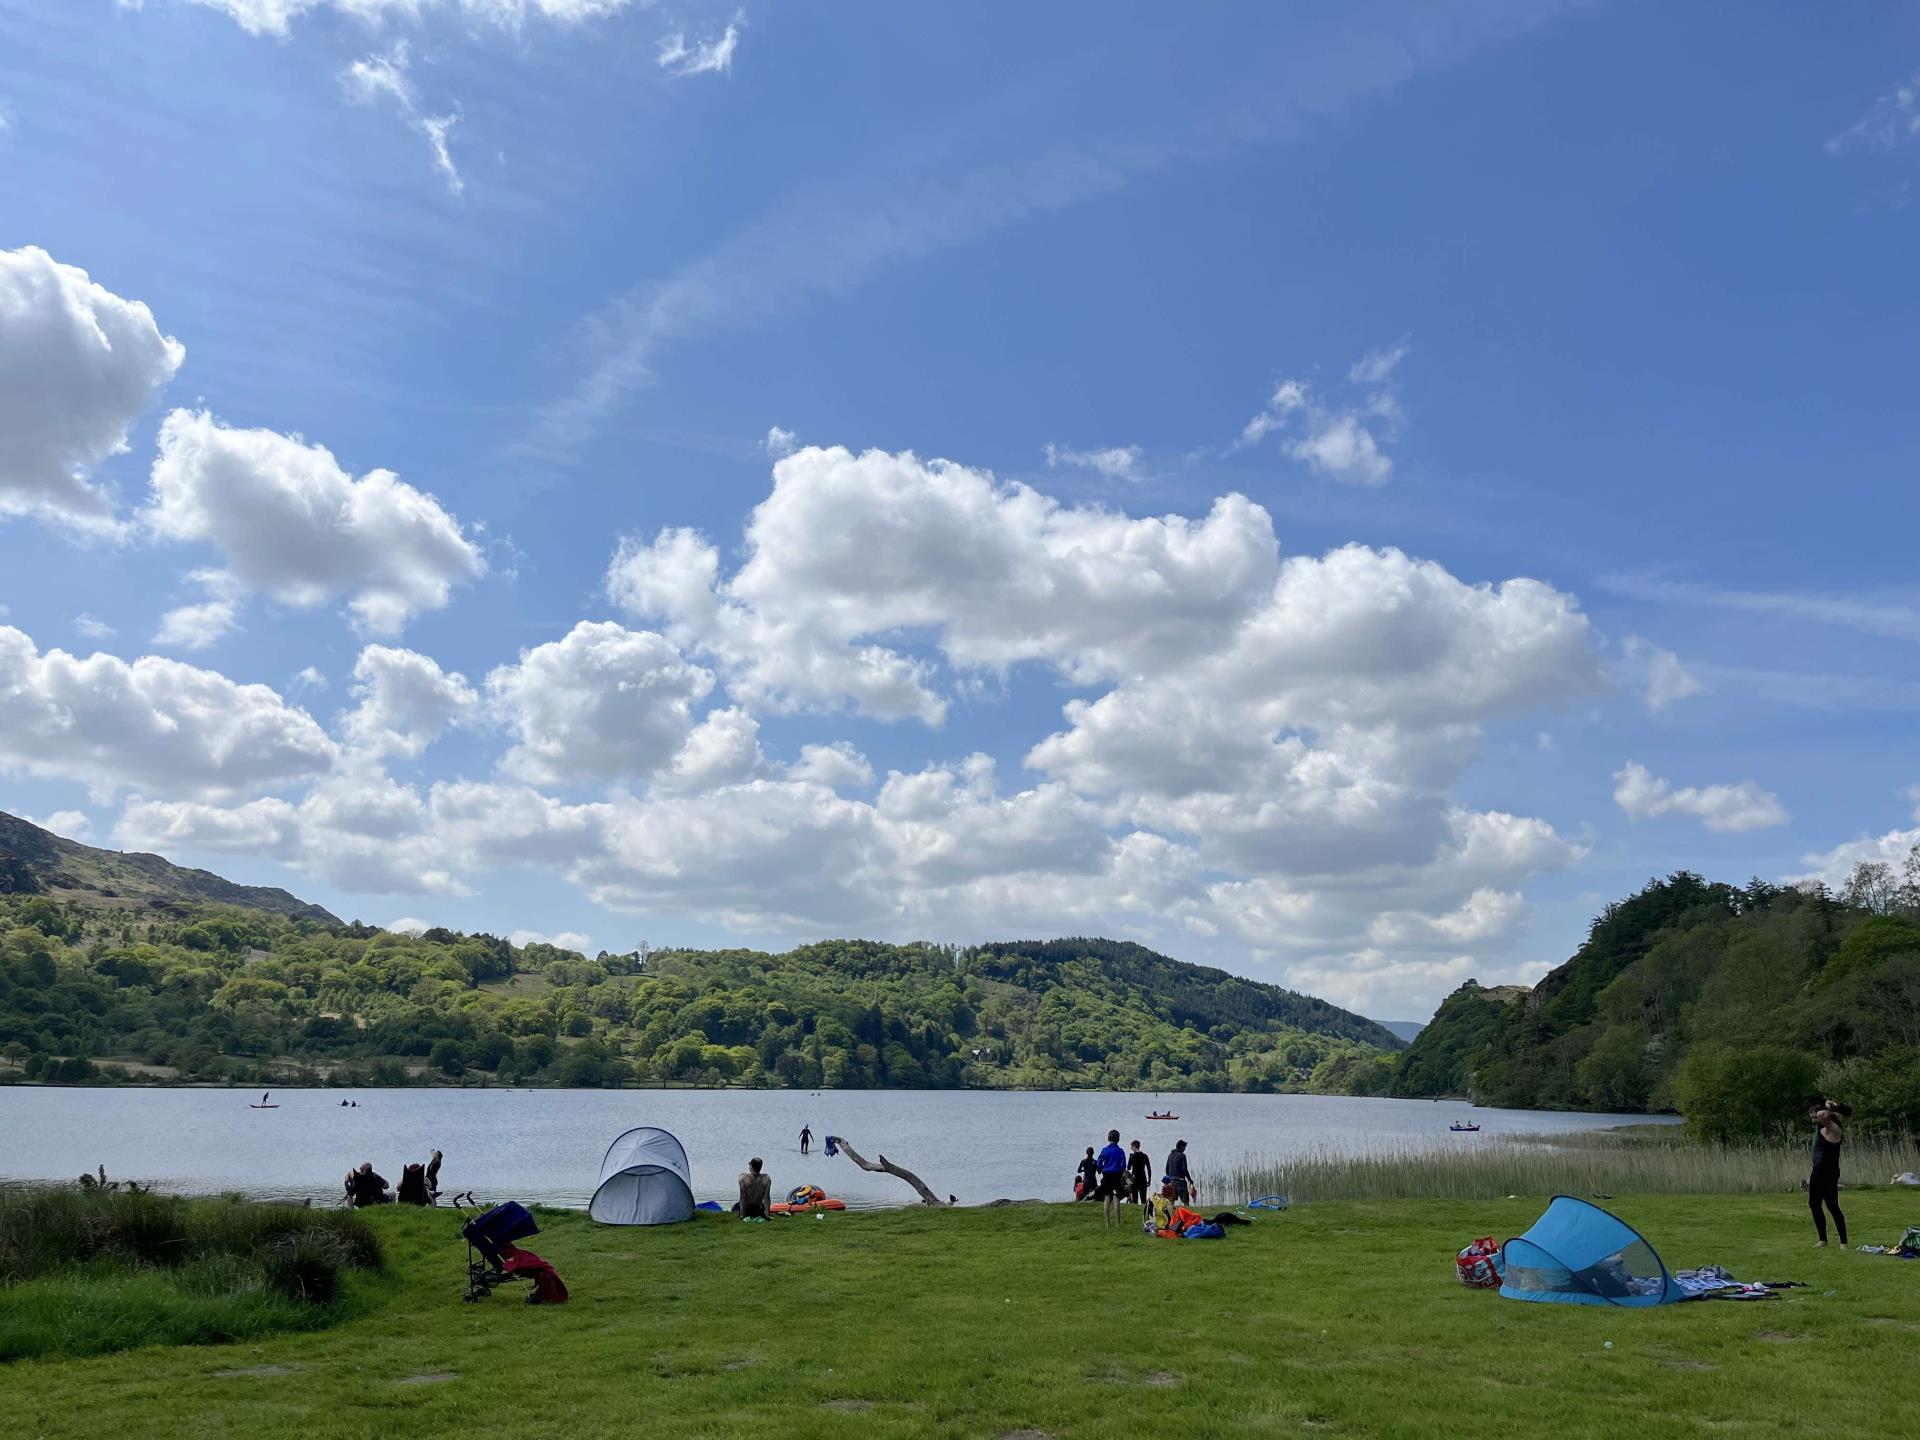 Llyn Gwynant Campsite sits on lake shore